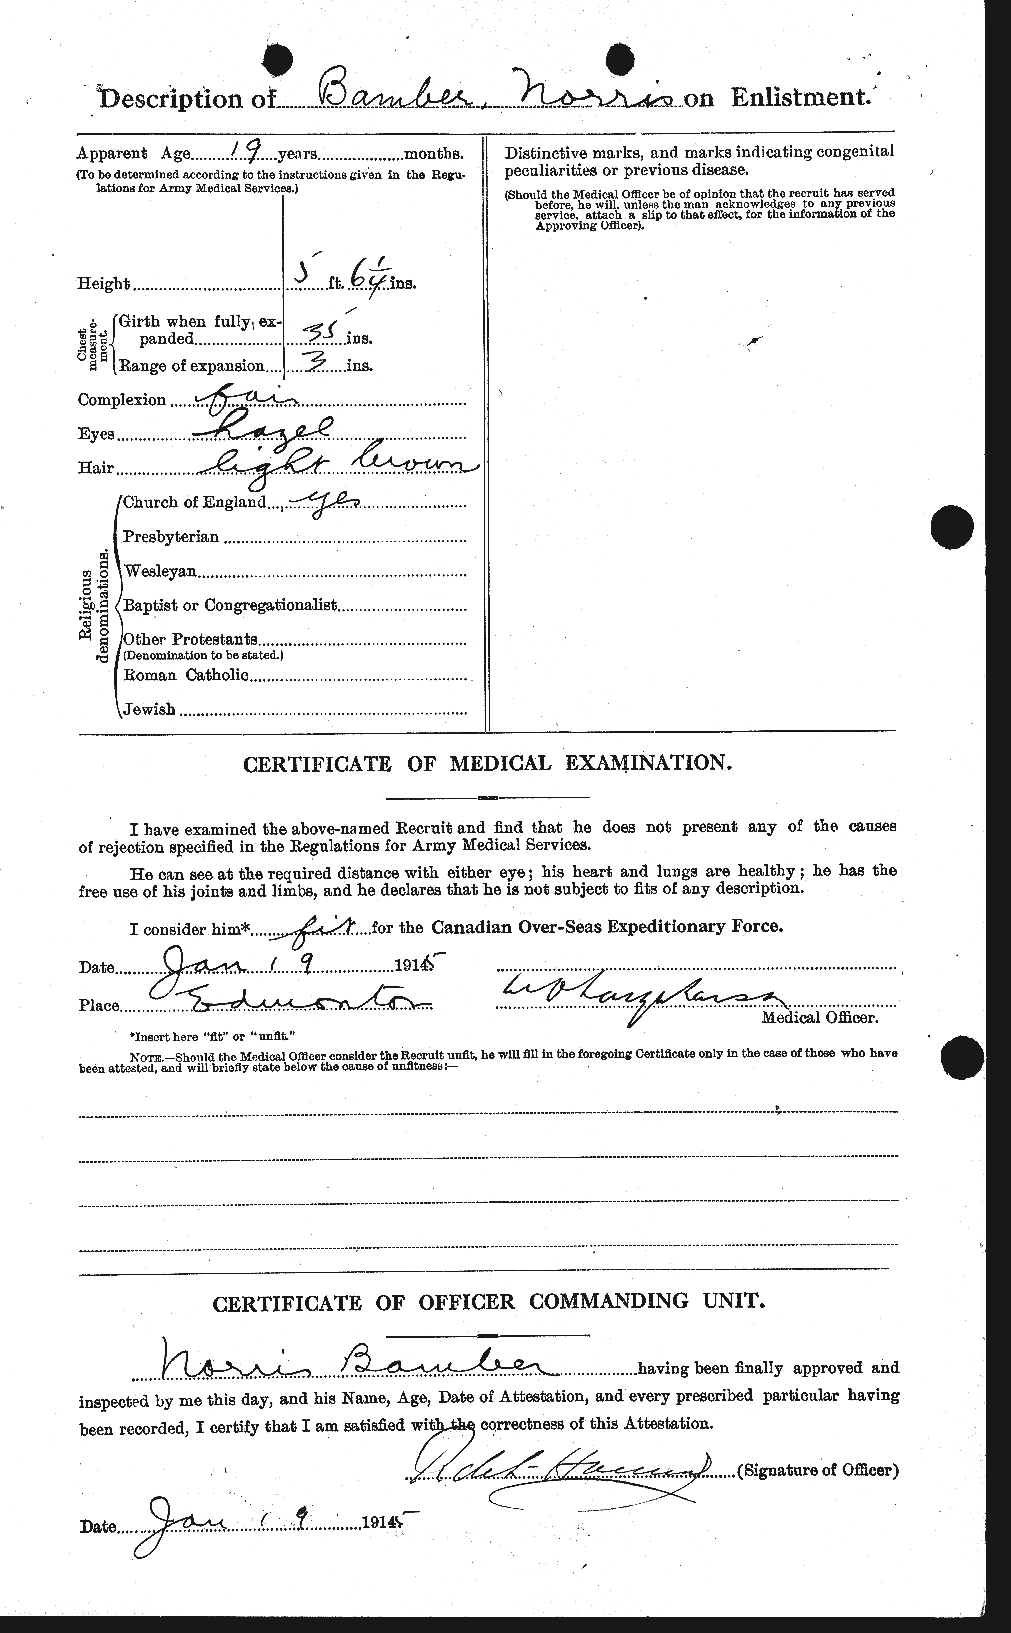 Dossiers du Personnel de la Première Guerre mondiale - CEC 219520b